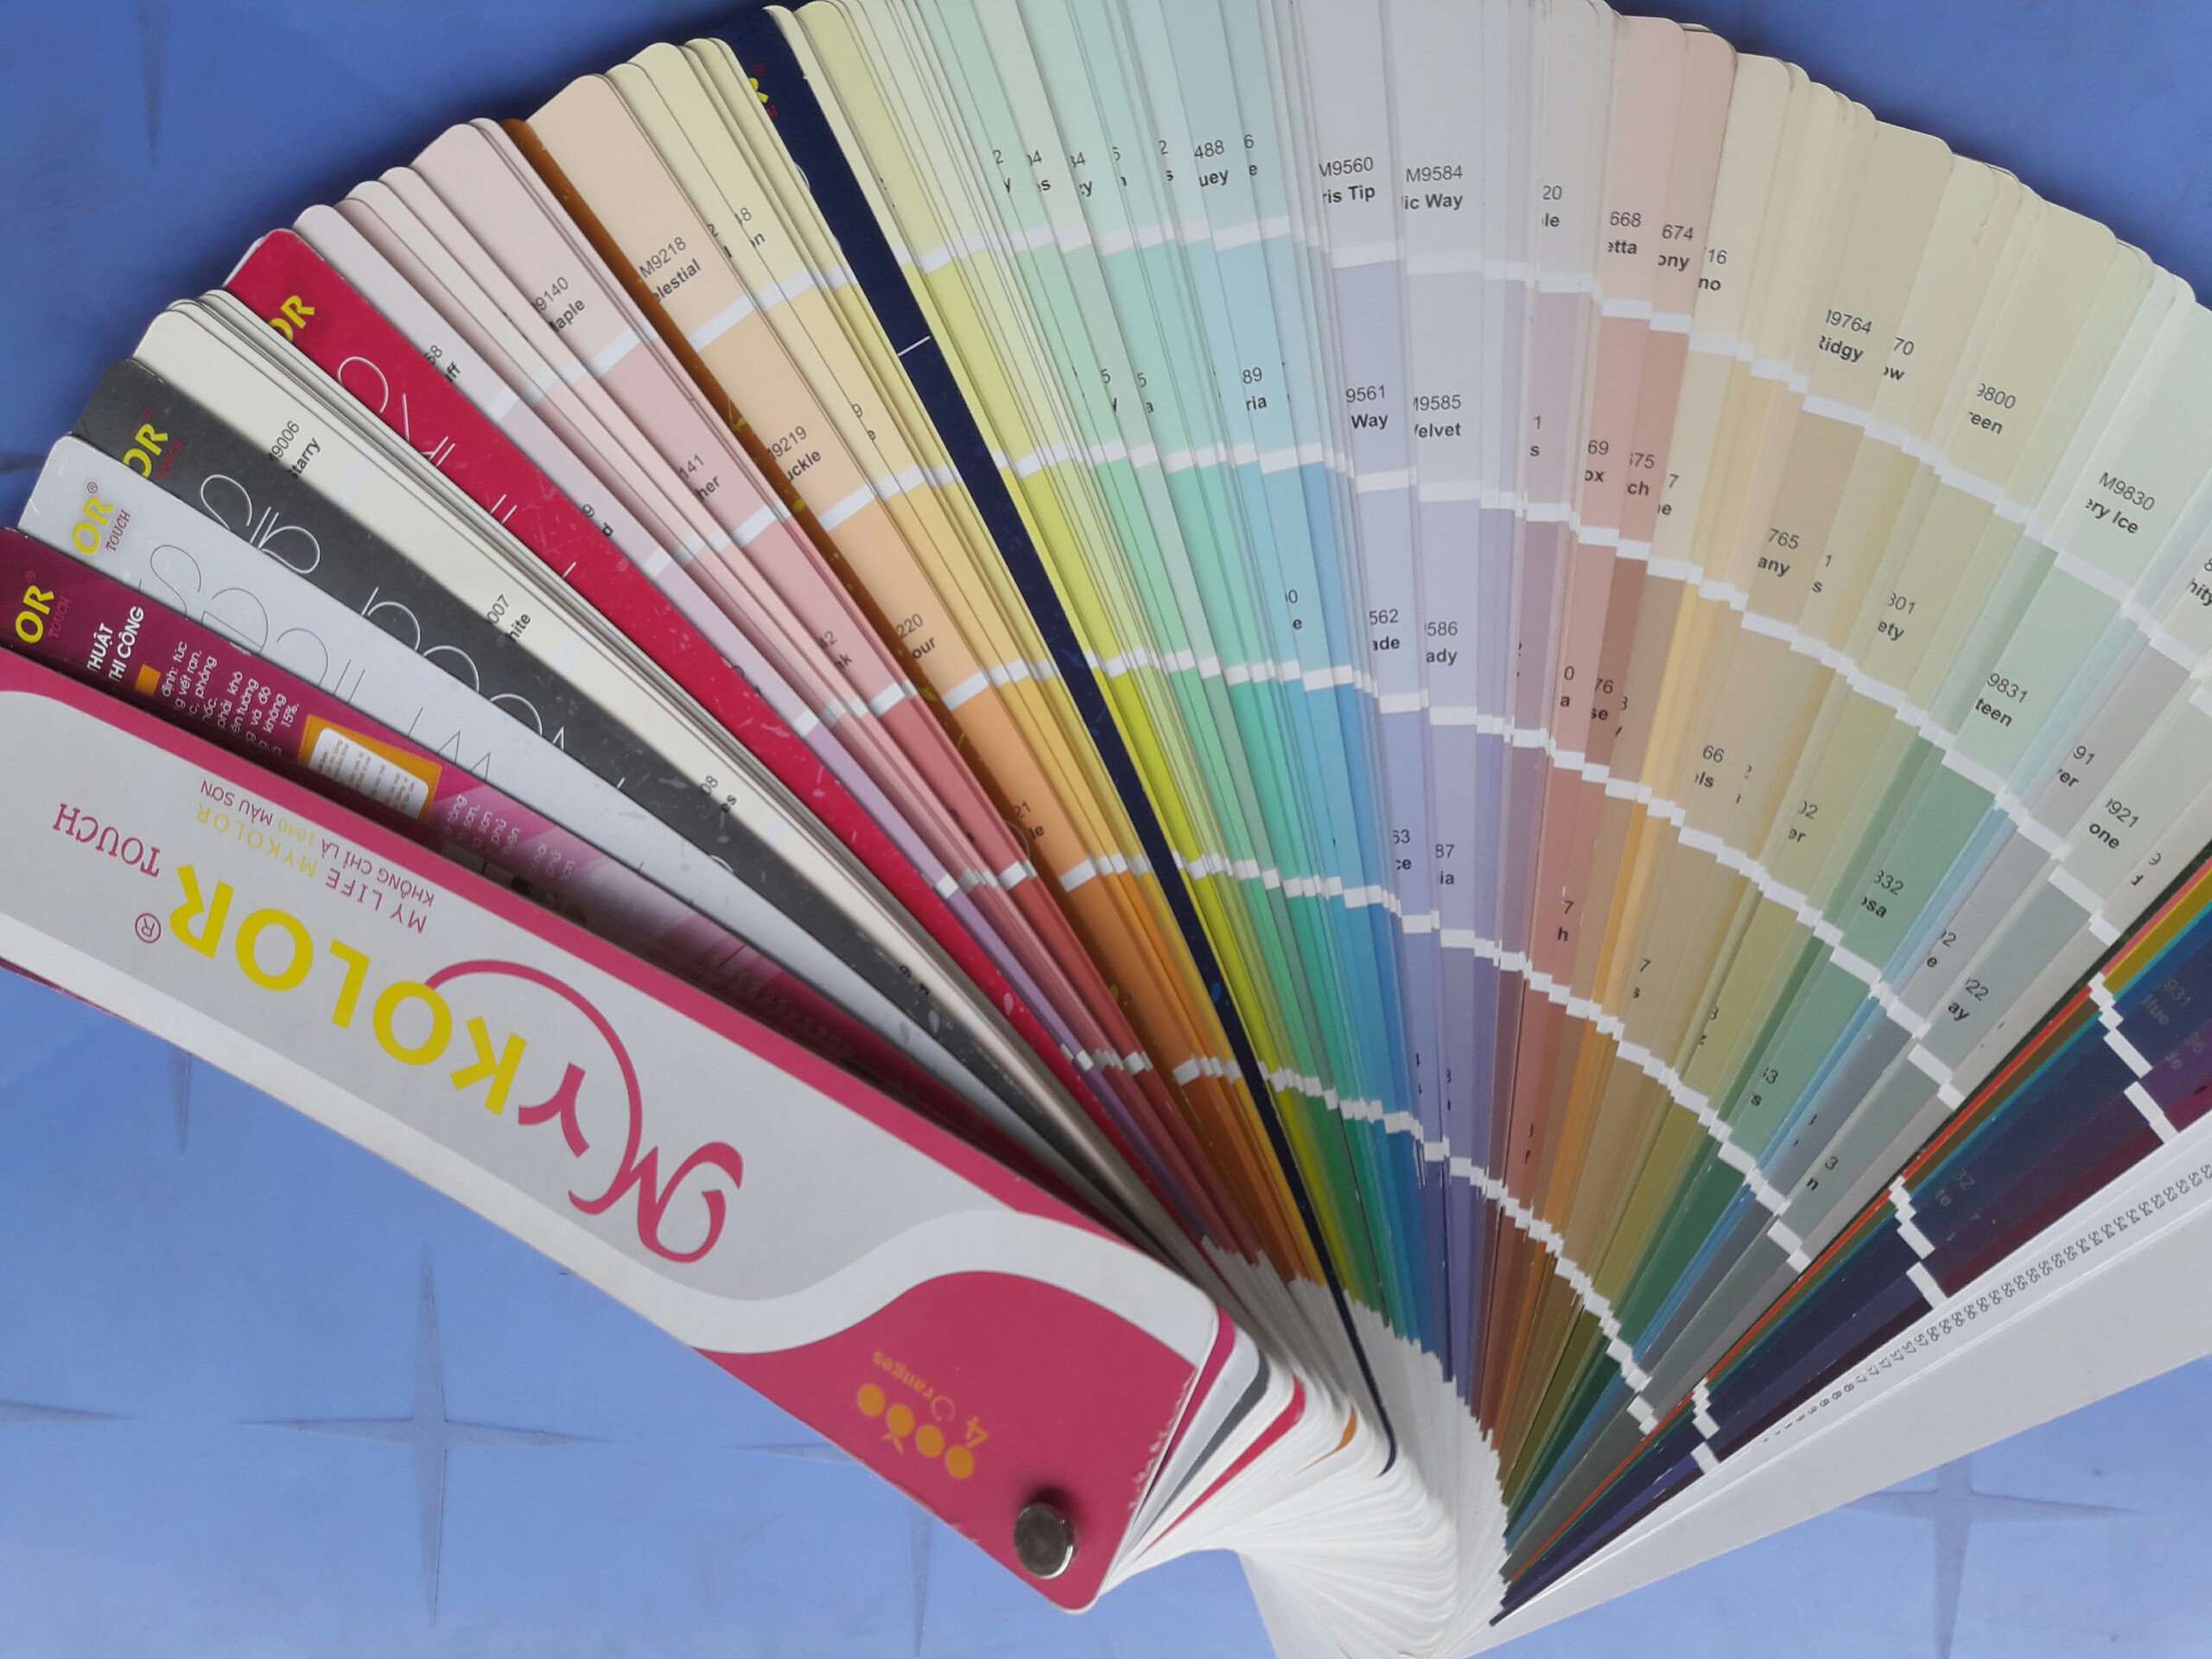 Với bảng màu sơn Mykolor, bạn sẽ dễ dàng lựa chọn được màu sắc phù hợp với phong cách thiết kế của mình. Đến với chúng tôi để được tư vấn và trải nghiệm sản phẩm chất lượng.